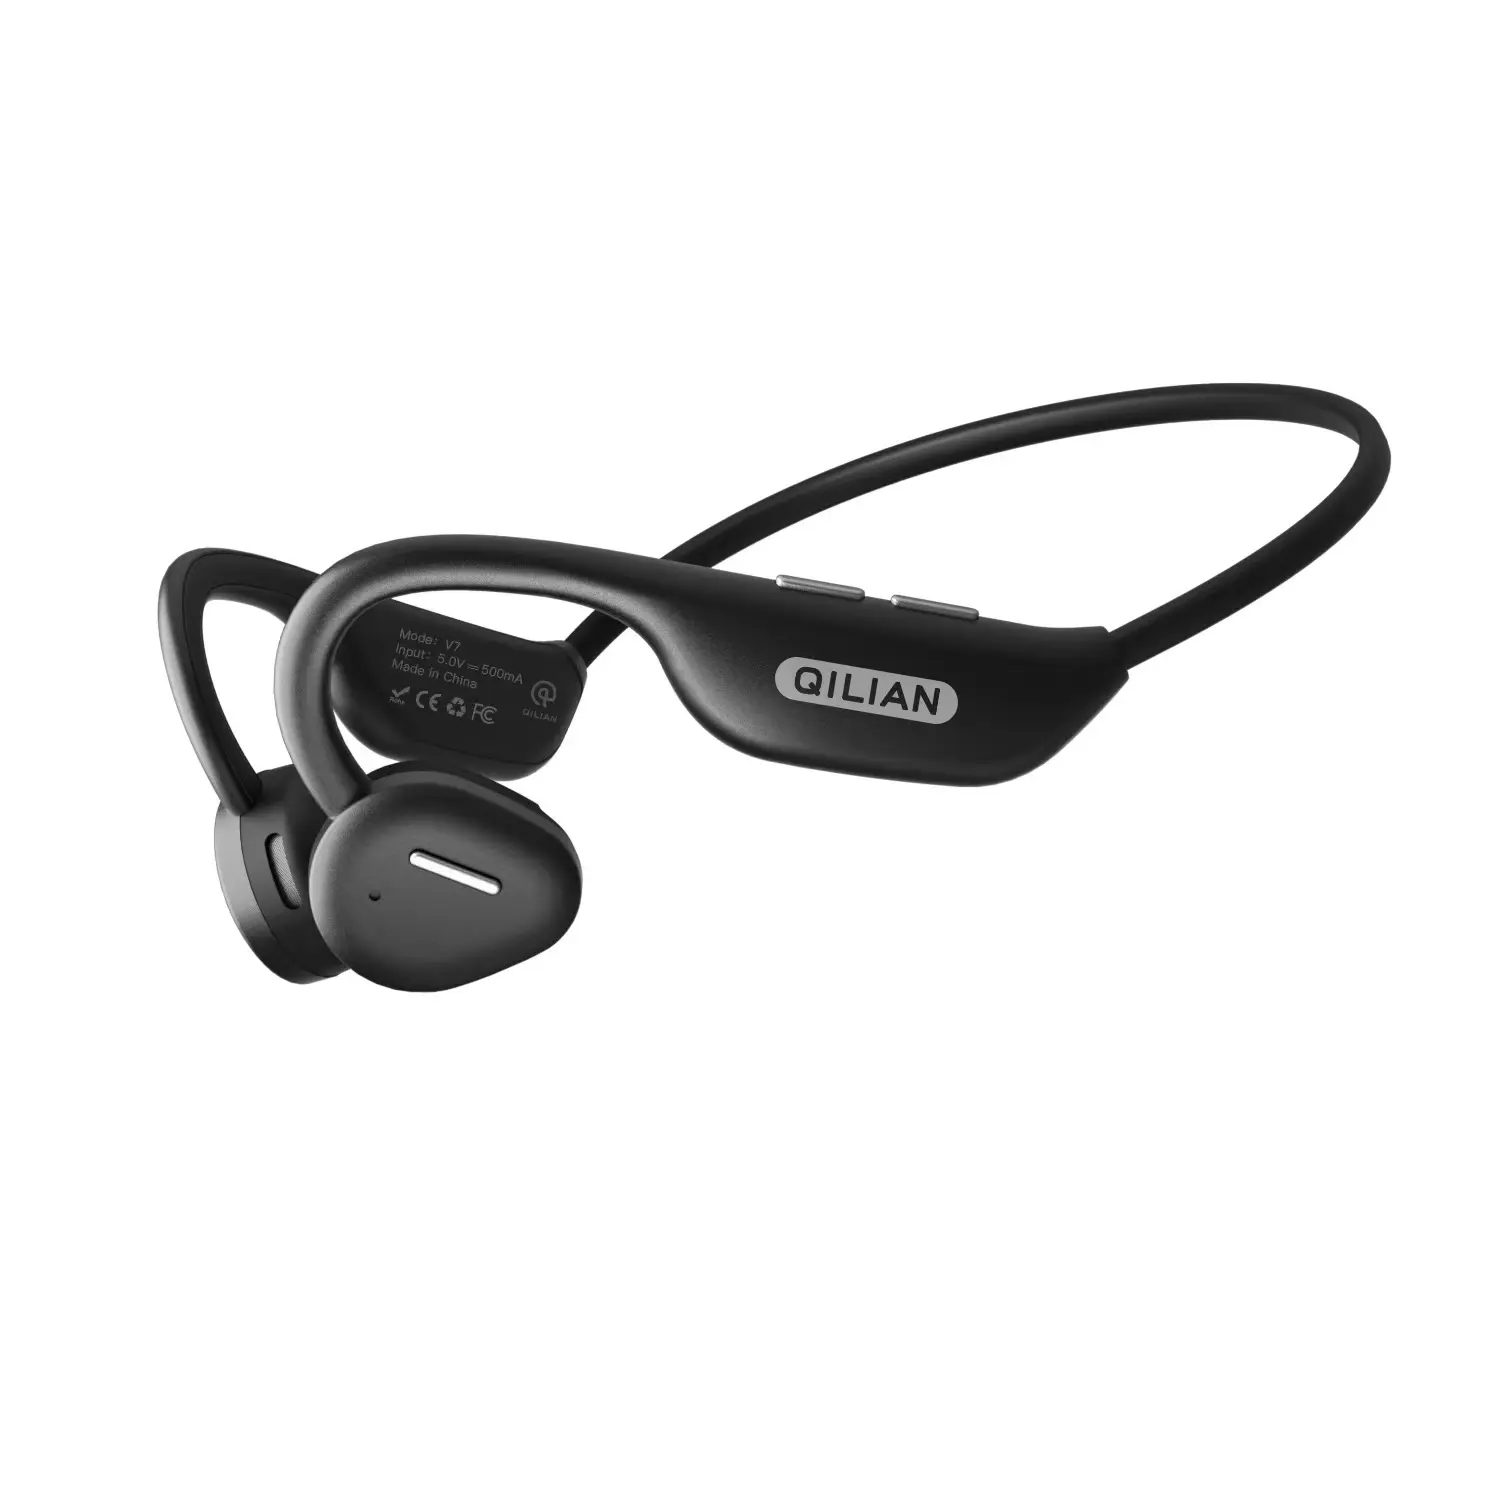 OEM ODM Neckband Open Ear Bluetooth Wireless Headset Air Conduction Headphone Waterproof Earphone For Sports